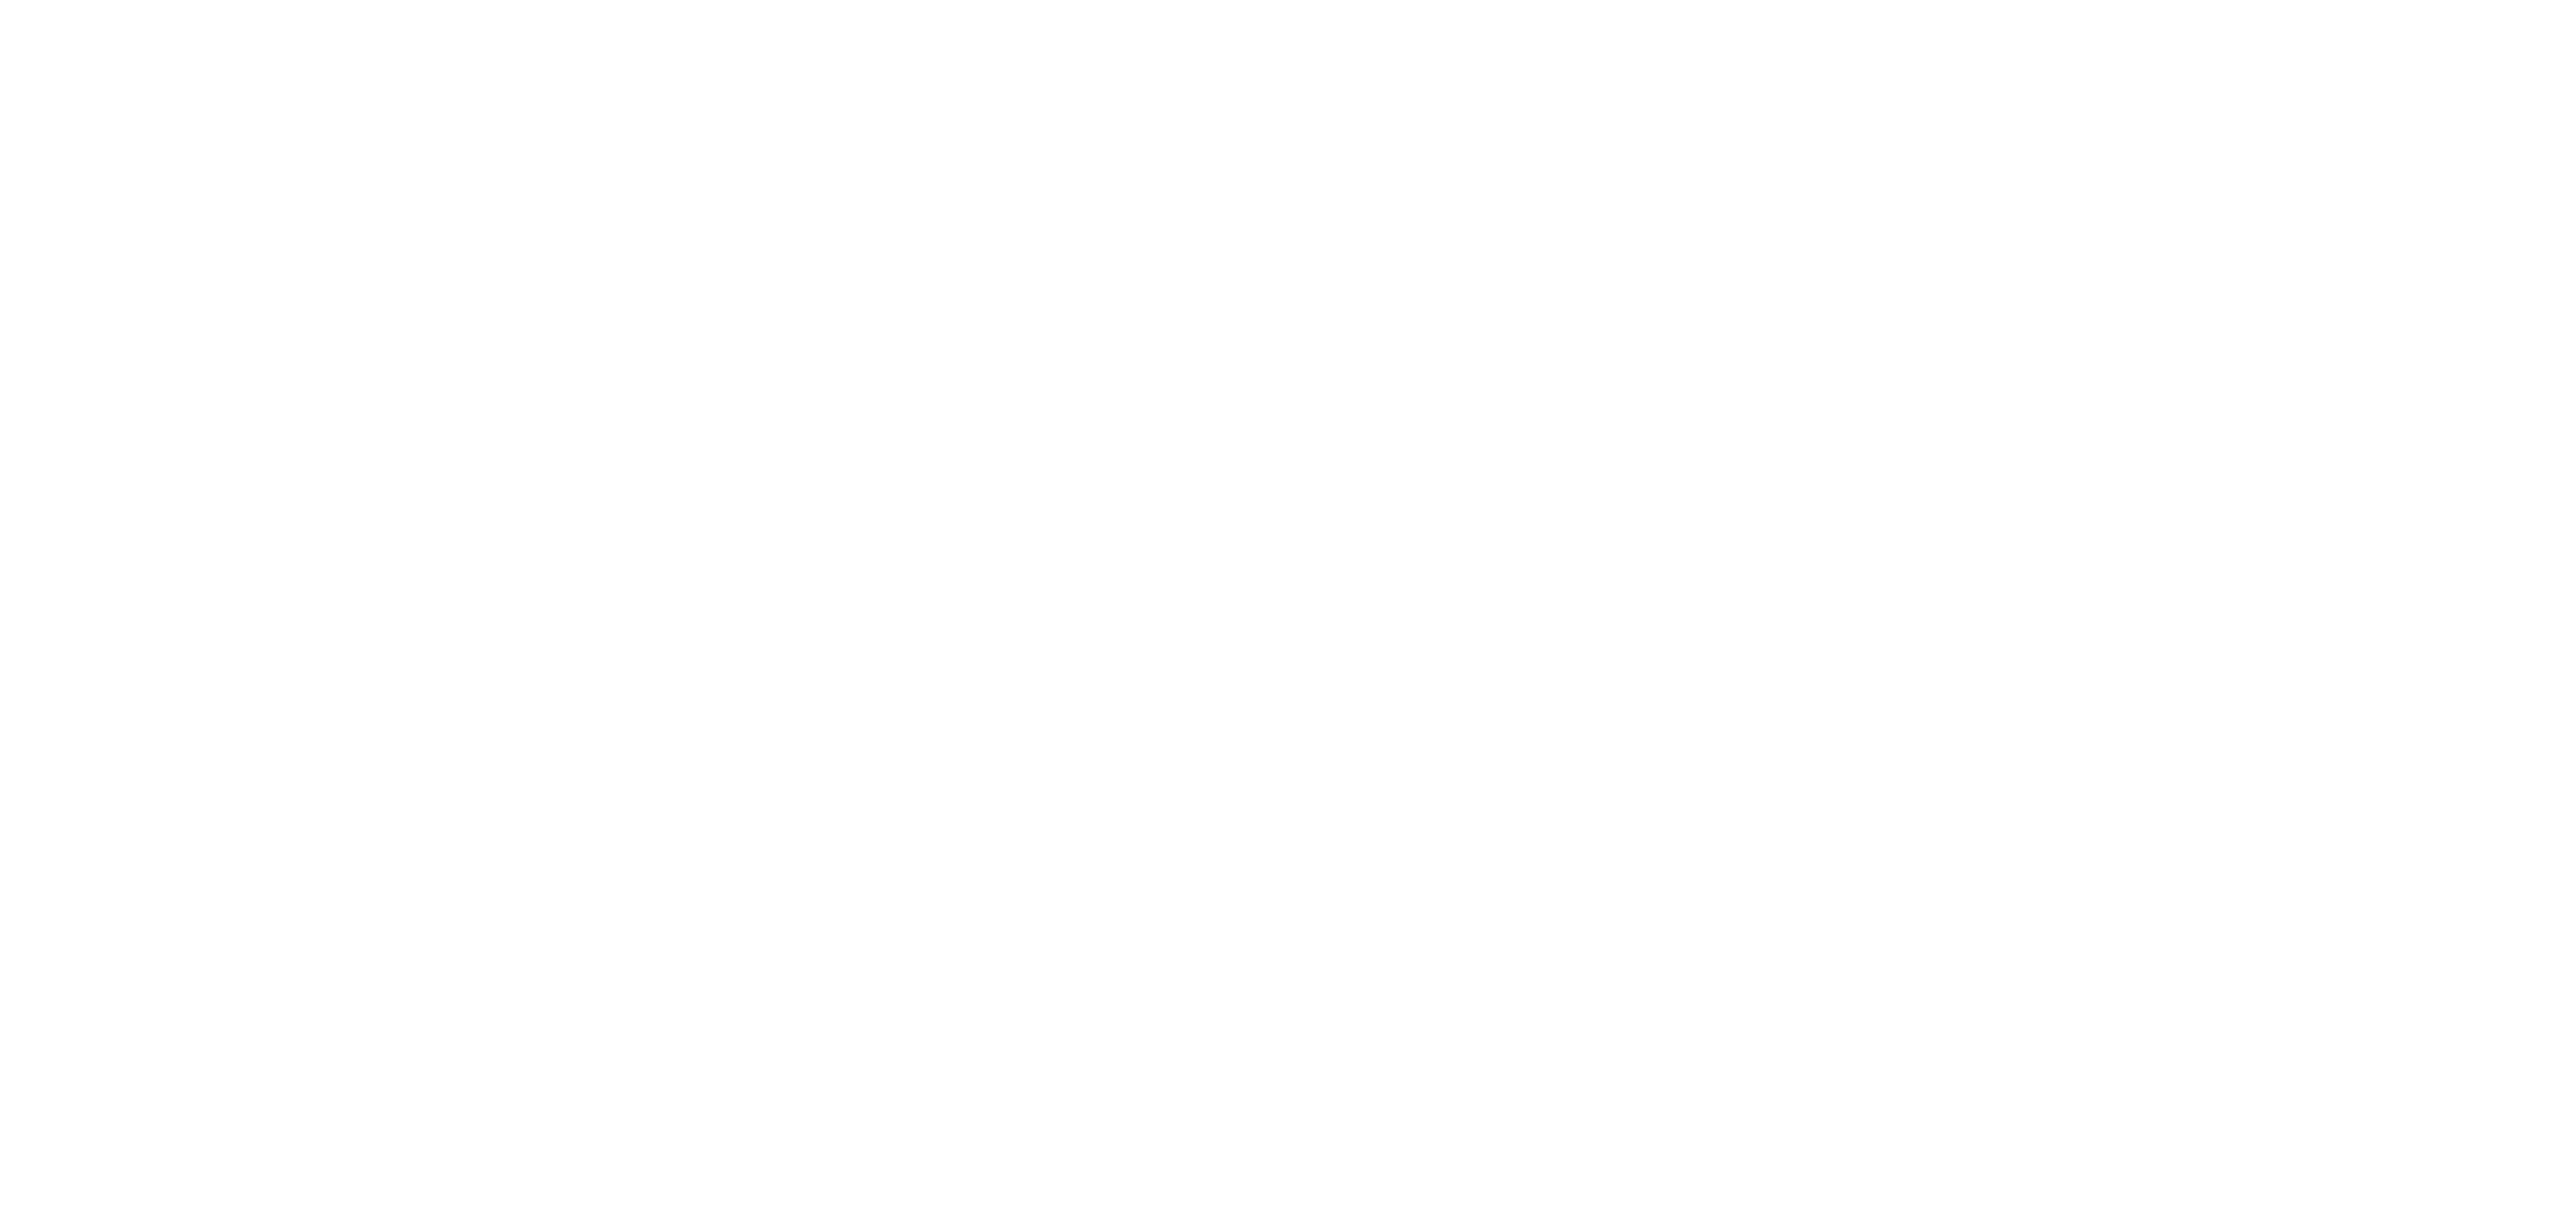 Clouds in My Club